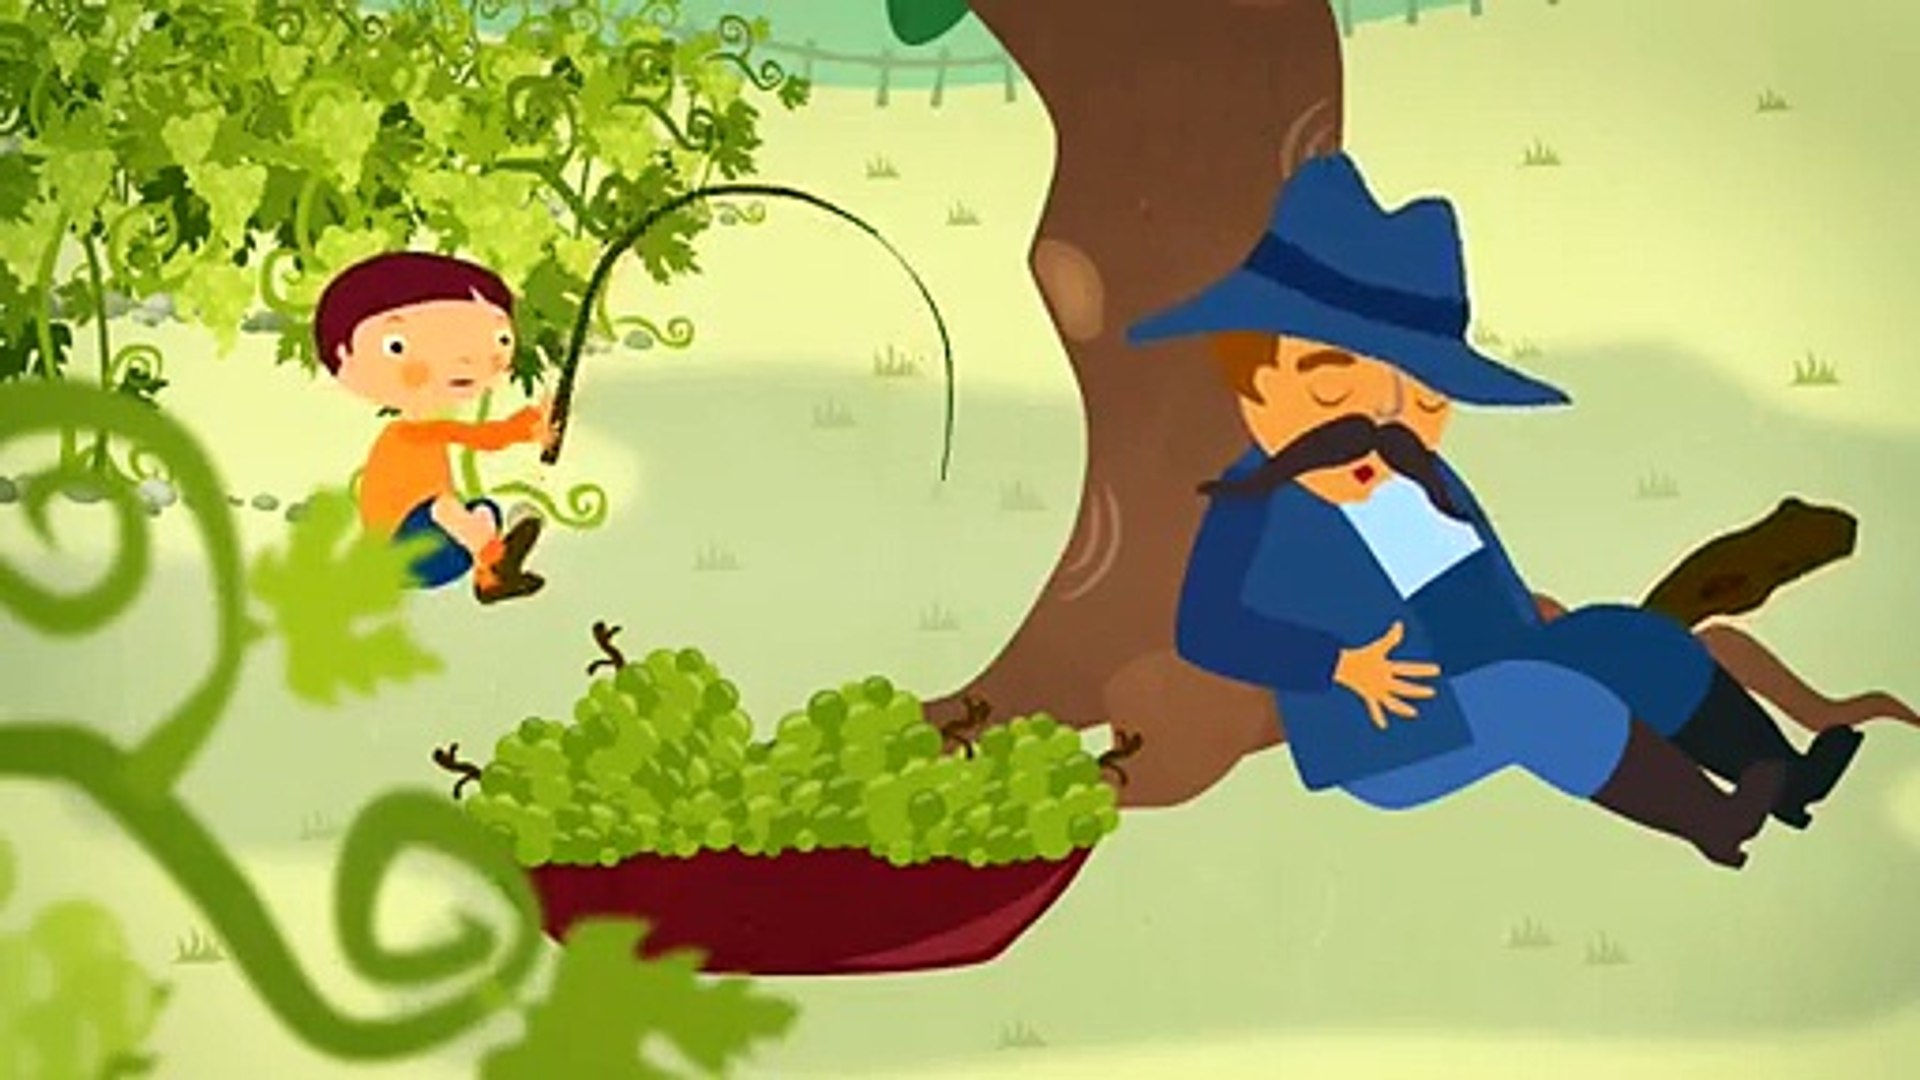 Lipem, lopom a szőlőt (gyerekdal, rajzfilm gyerekeknek) - Dailymotion Video